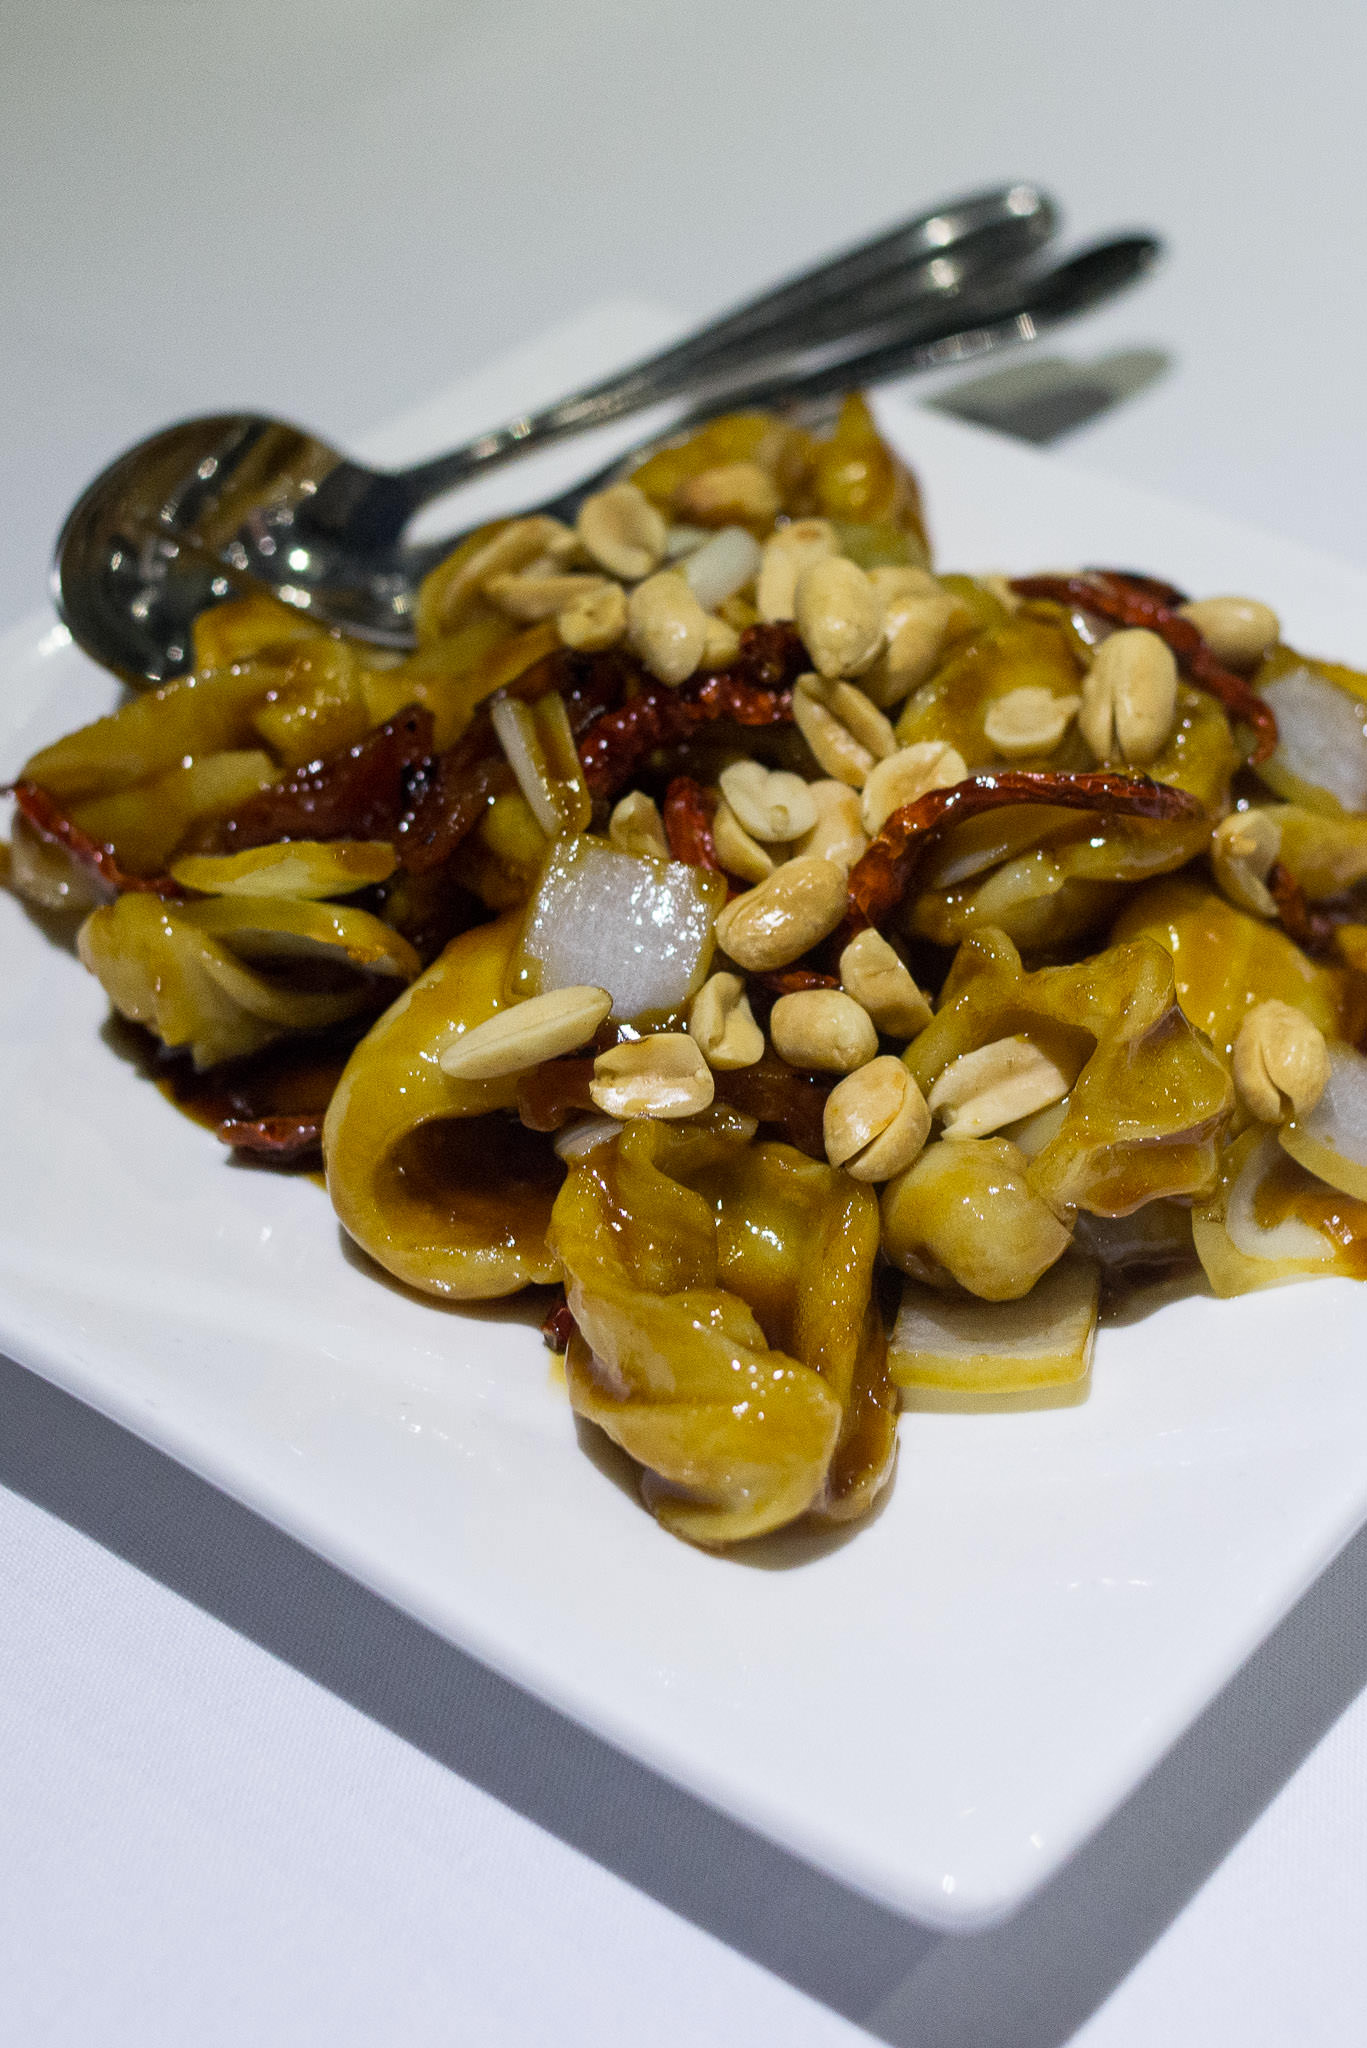 Stir-fried squid with spicy Szechuan sauce (AU$23.80)